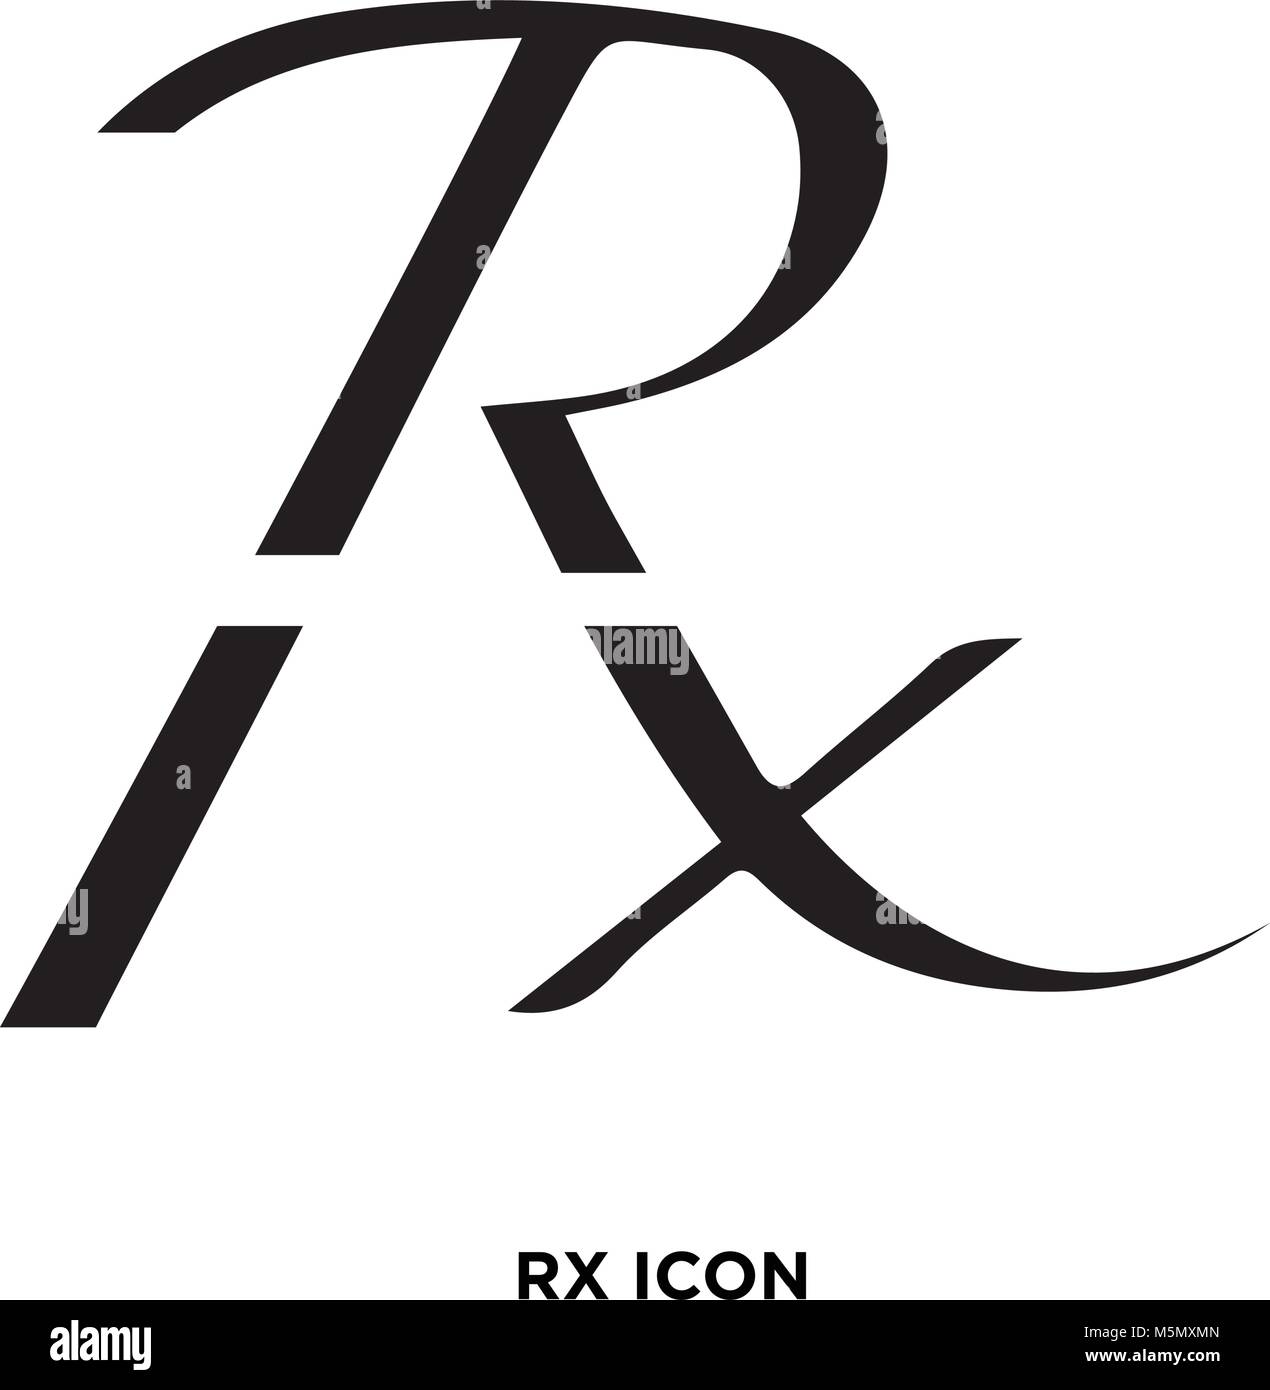 medicine symbol rx